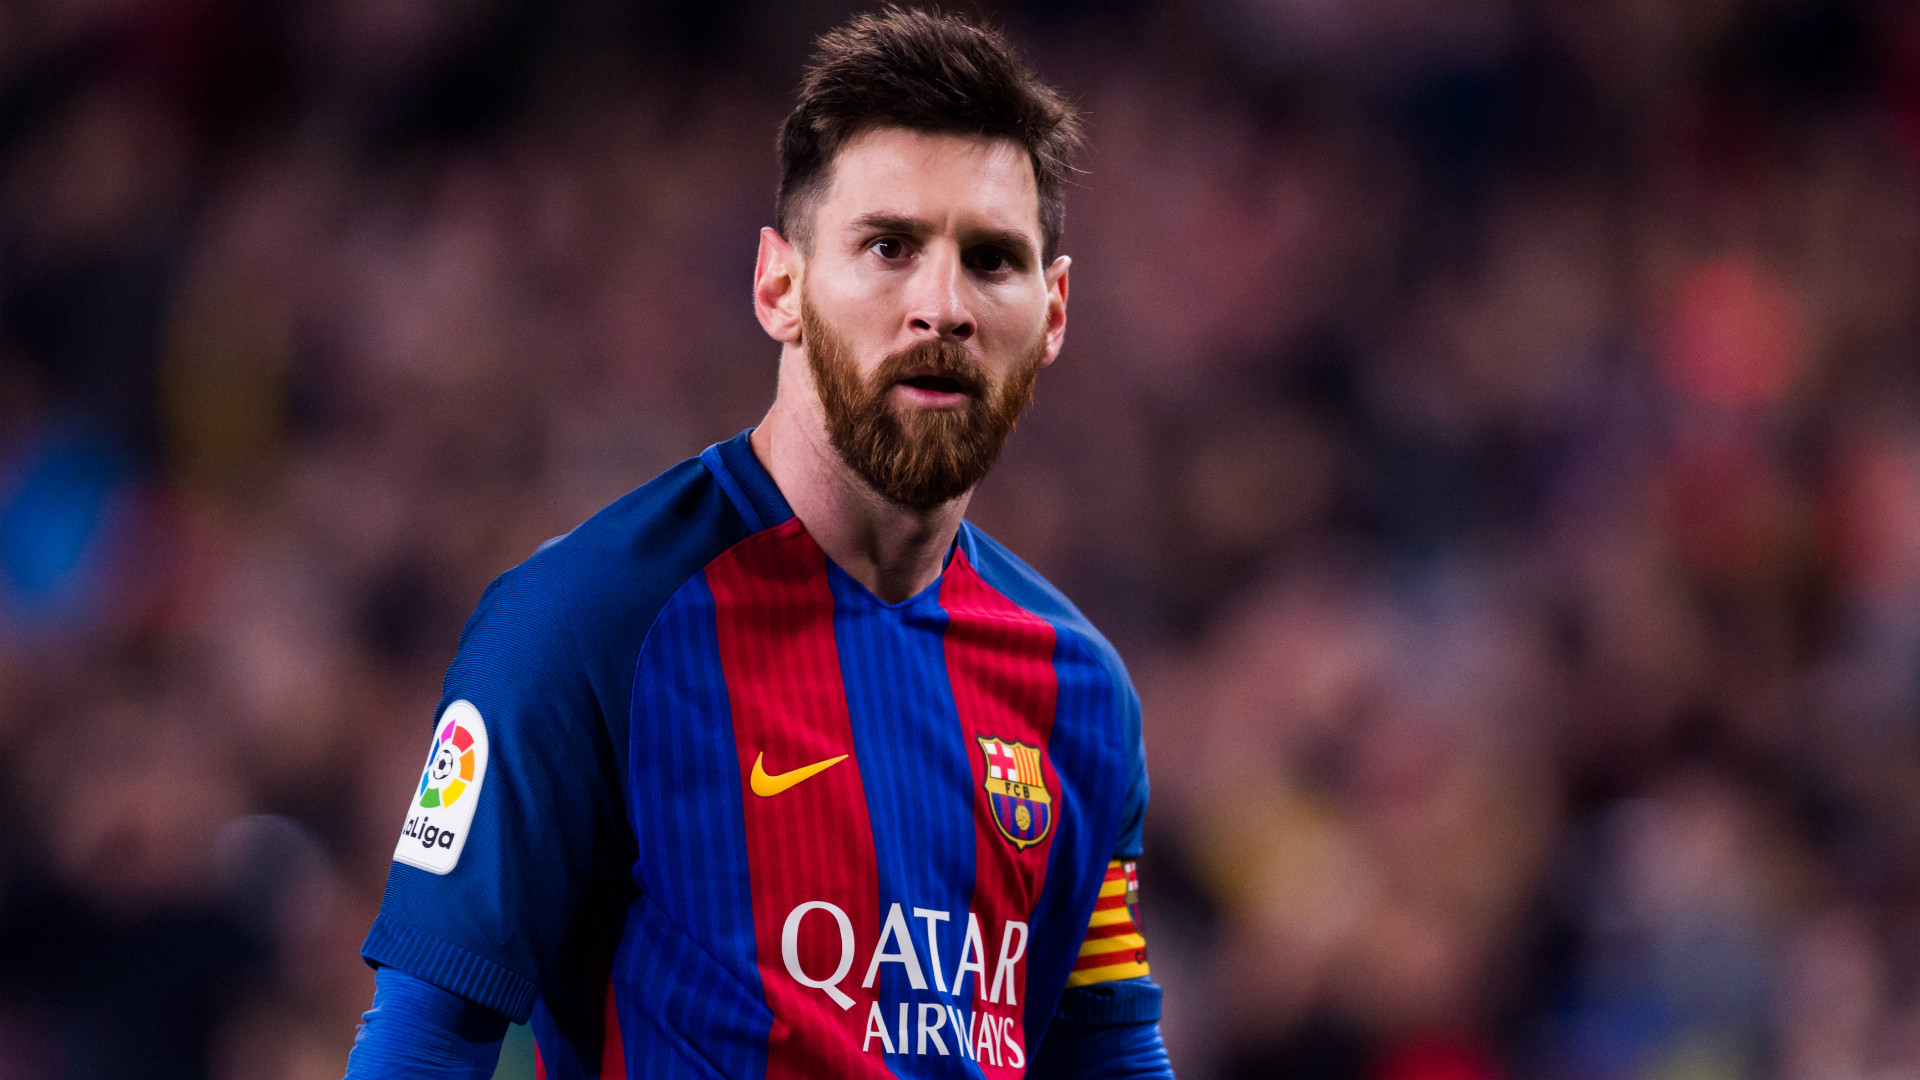 Lionel Messi Barcelona La Liga - Lionel Messi 2016 17 - HD Wallpaper 